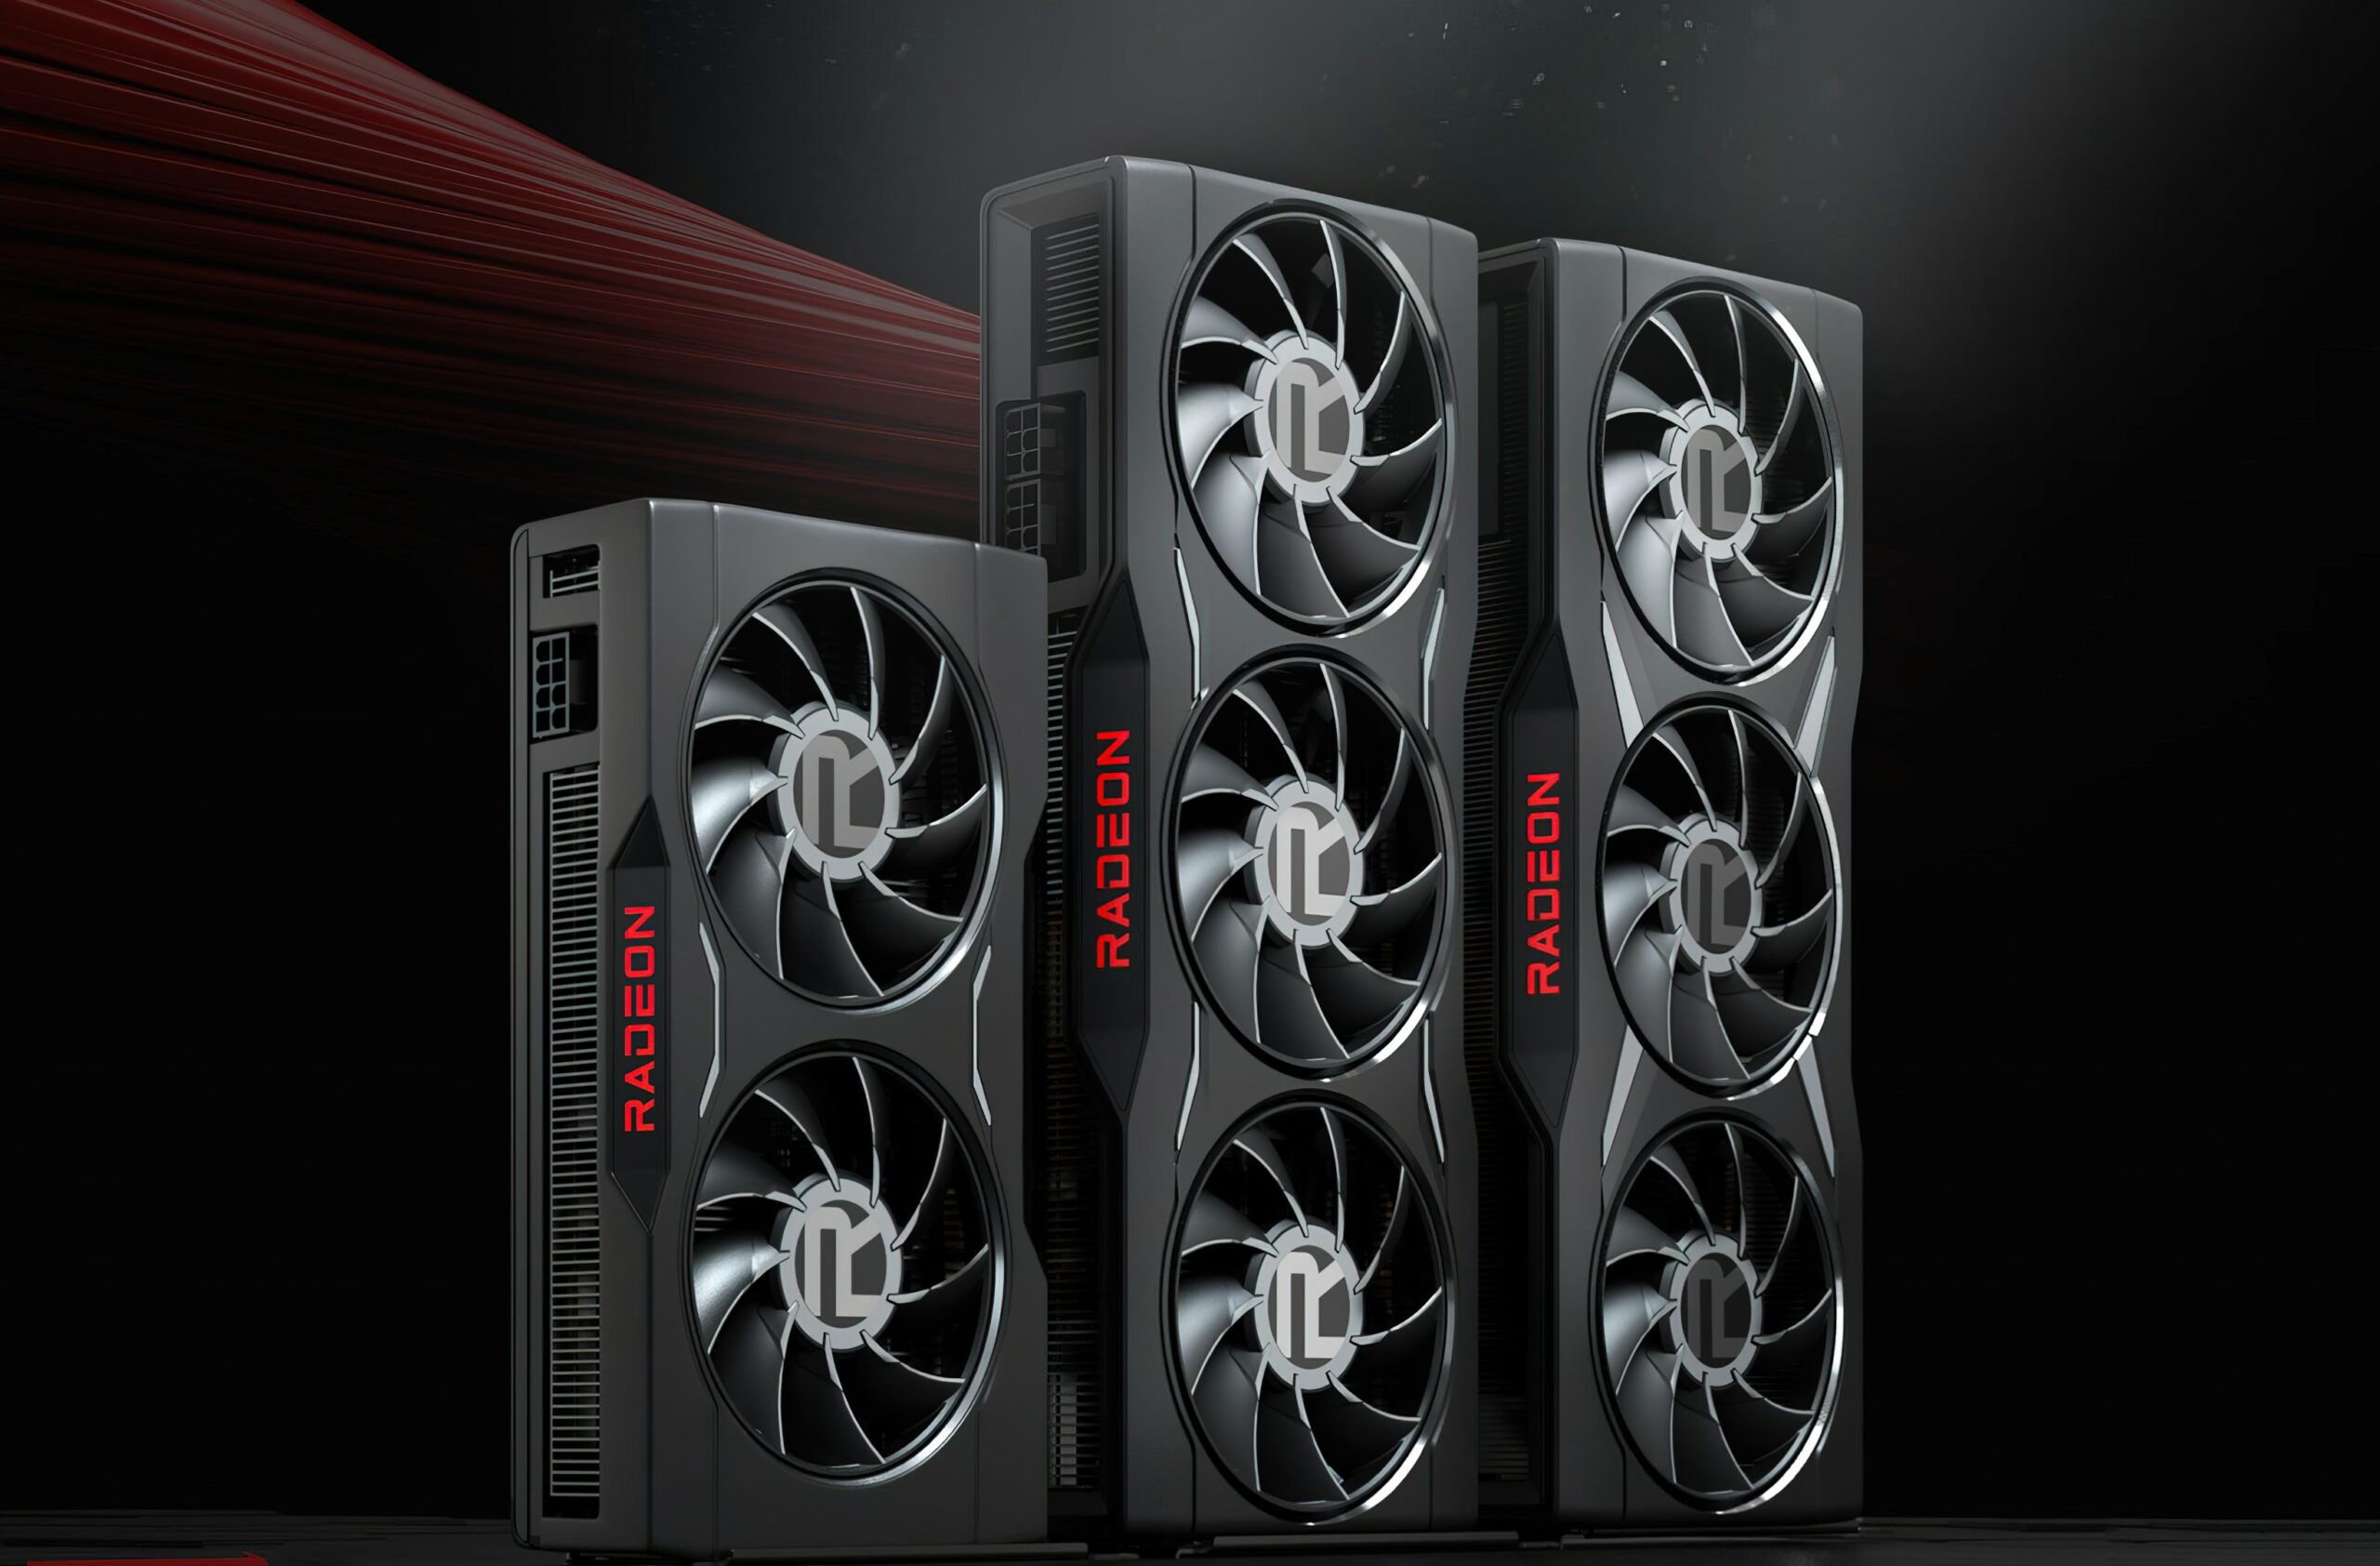 AMD Marketing afferma che le GPU Radeon RX 6000 offrono prestazioni migliori per dollaro e frame più elevati per watt rispetto alla serie RTX 30 di NVIDIA.